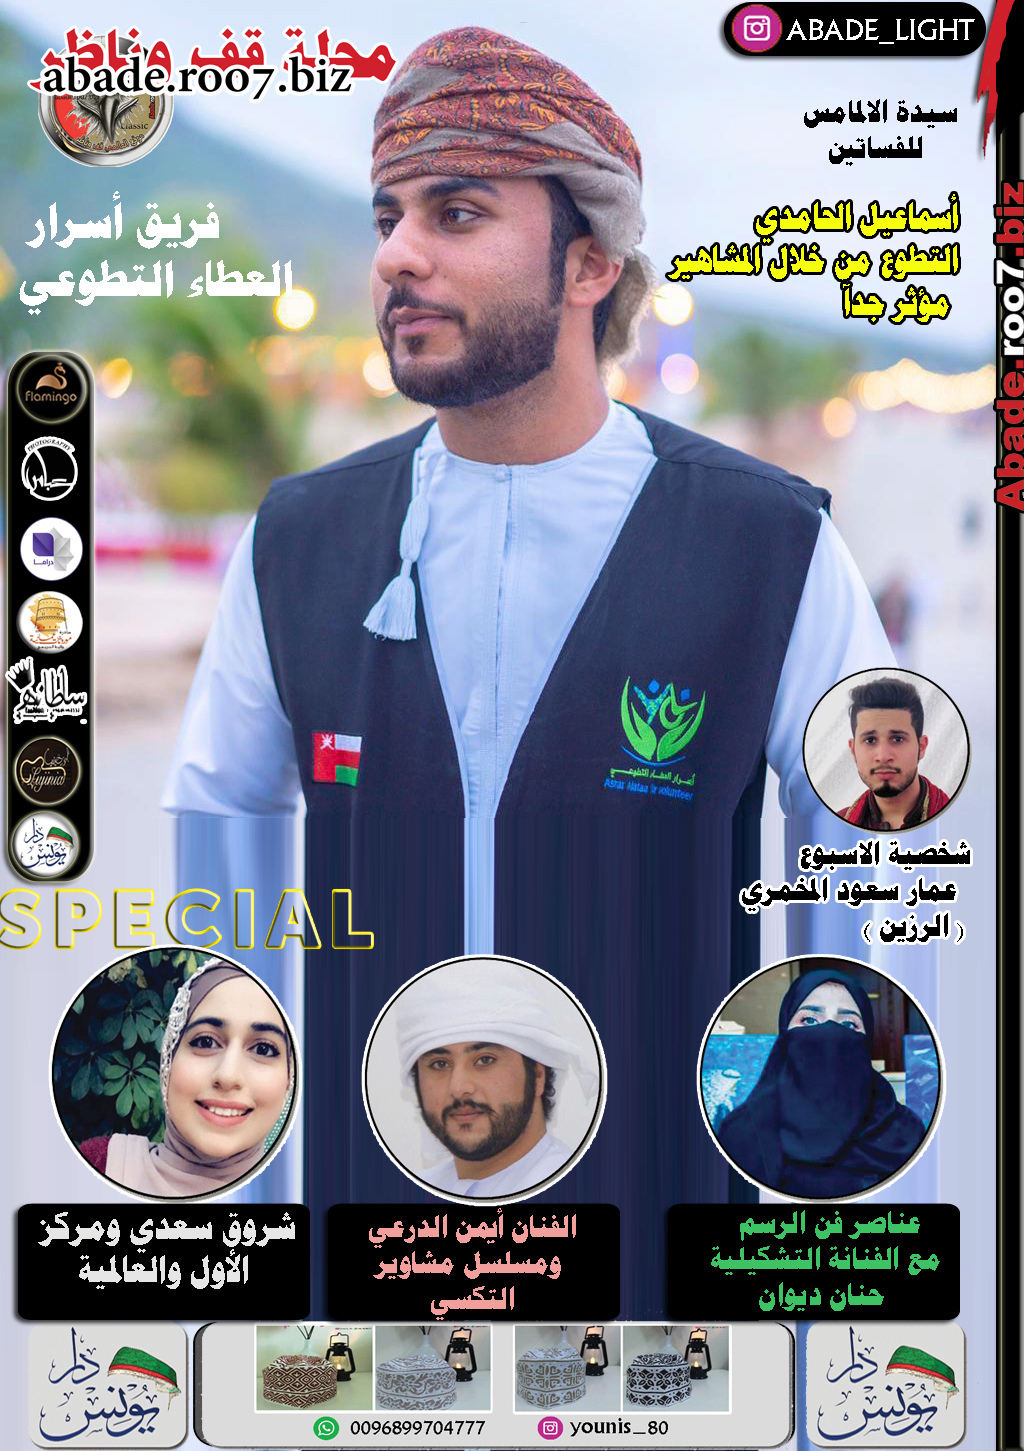 مجلة قف وناظر 2020 نجم الغلاف إسماعيل بن حمد الحامدي  رئيس فريق أسرار العطاء التطوعي Aa020